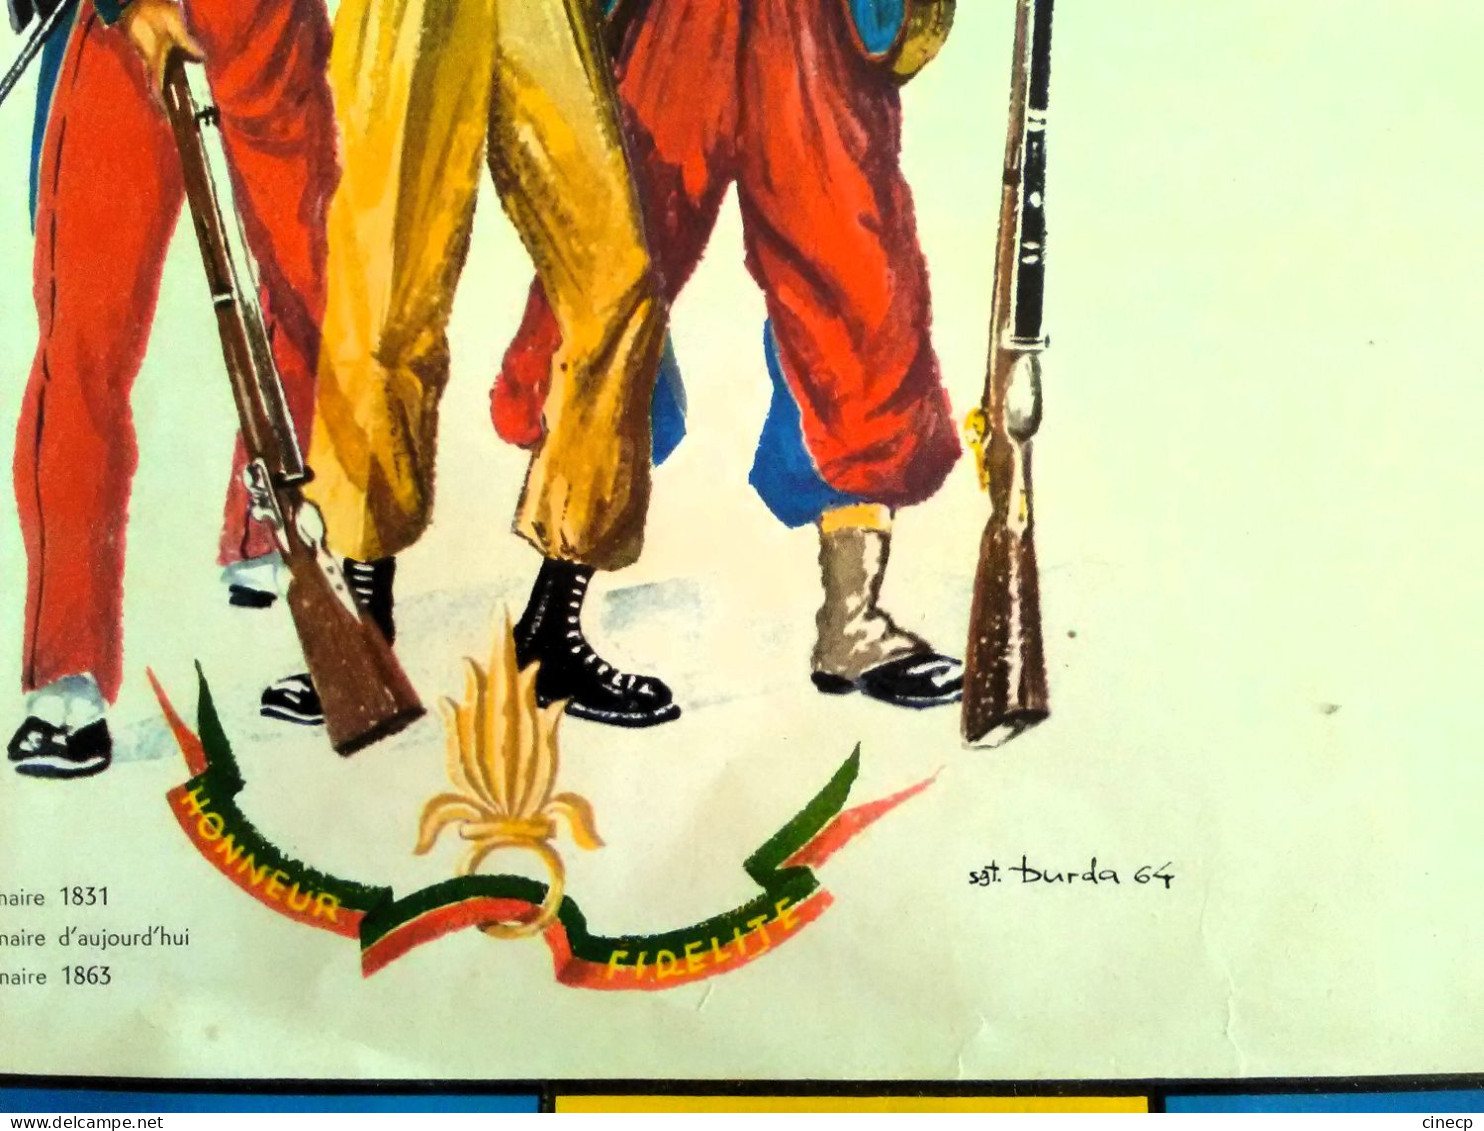 Superbe AFFICHE Calendrier Ancien Militaire De La Légion étrangère 1965 Illustrateur Burda éditions Képi Blanc Soldat - Grossformat : 1961-70